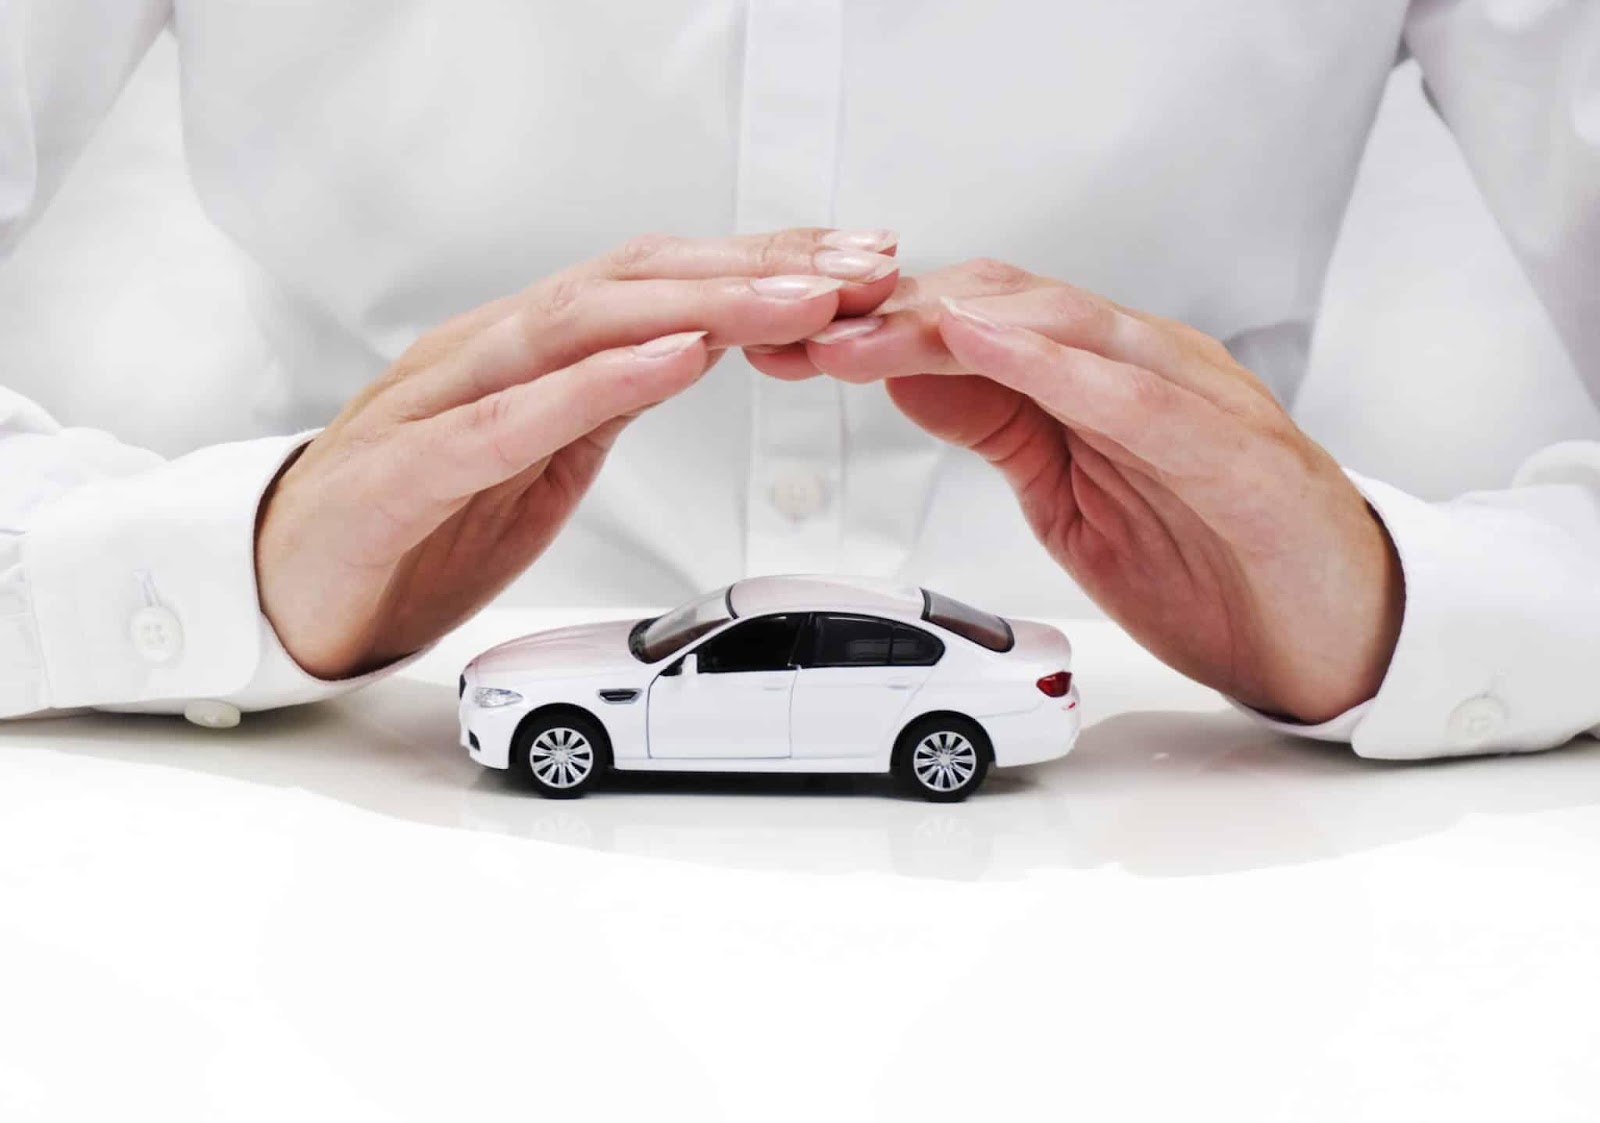 Hướng dẫn bảo hiểm vật chất xe ô tô là gì đảm bảo tối đa quyền lợi 